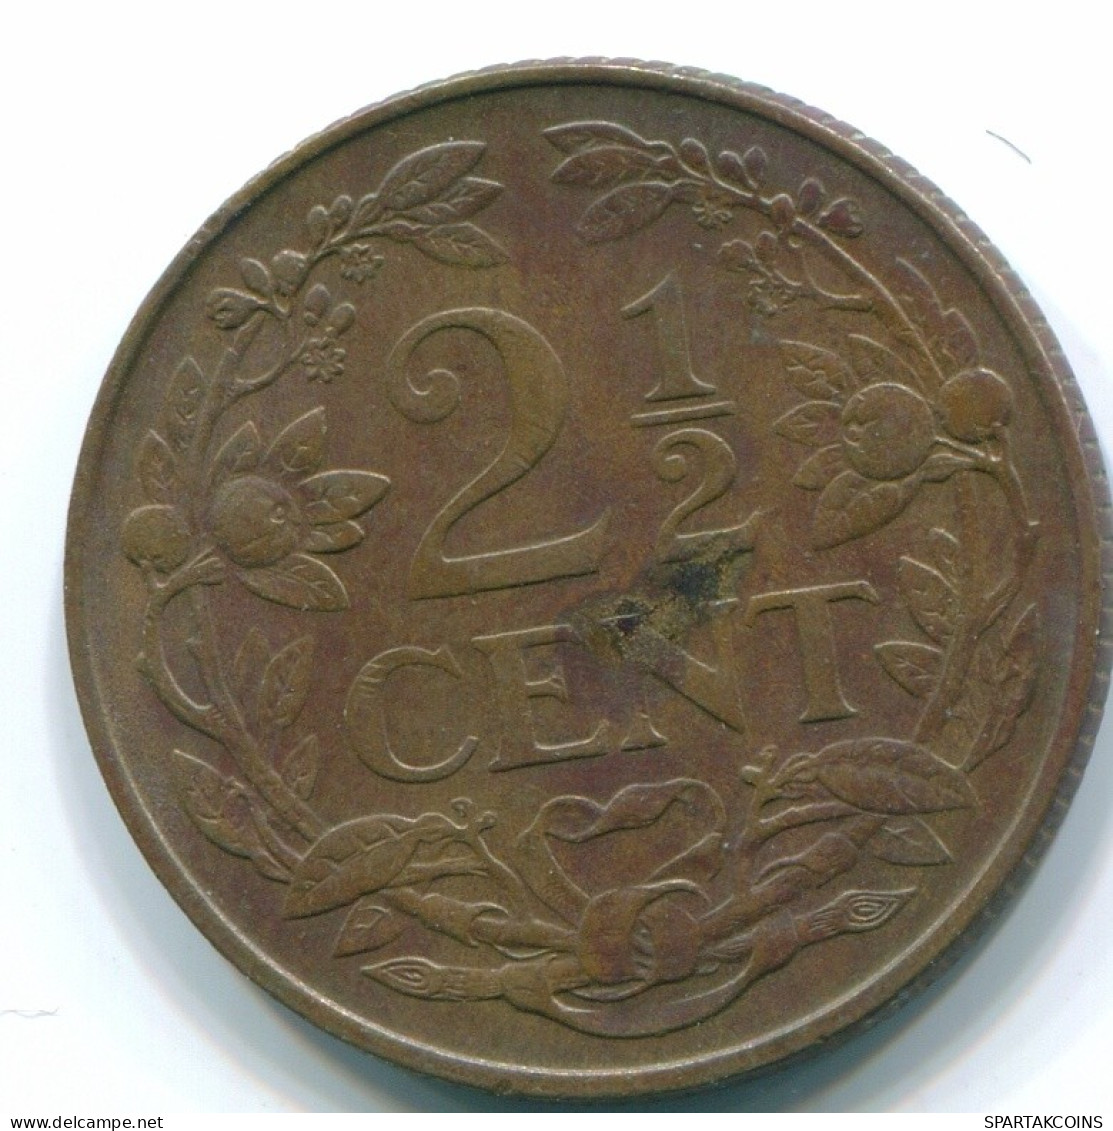 2 1/2 CENT 1965 CURACAO NEERLANDÉS NETHERLANDS Bronze Colonial Moneda #S10227.E.A - Curaçao